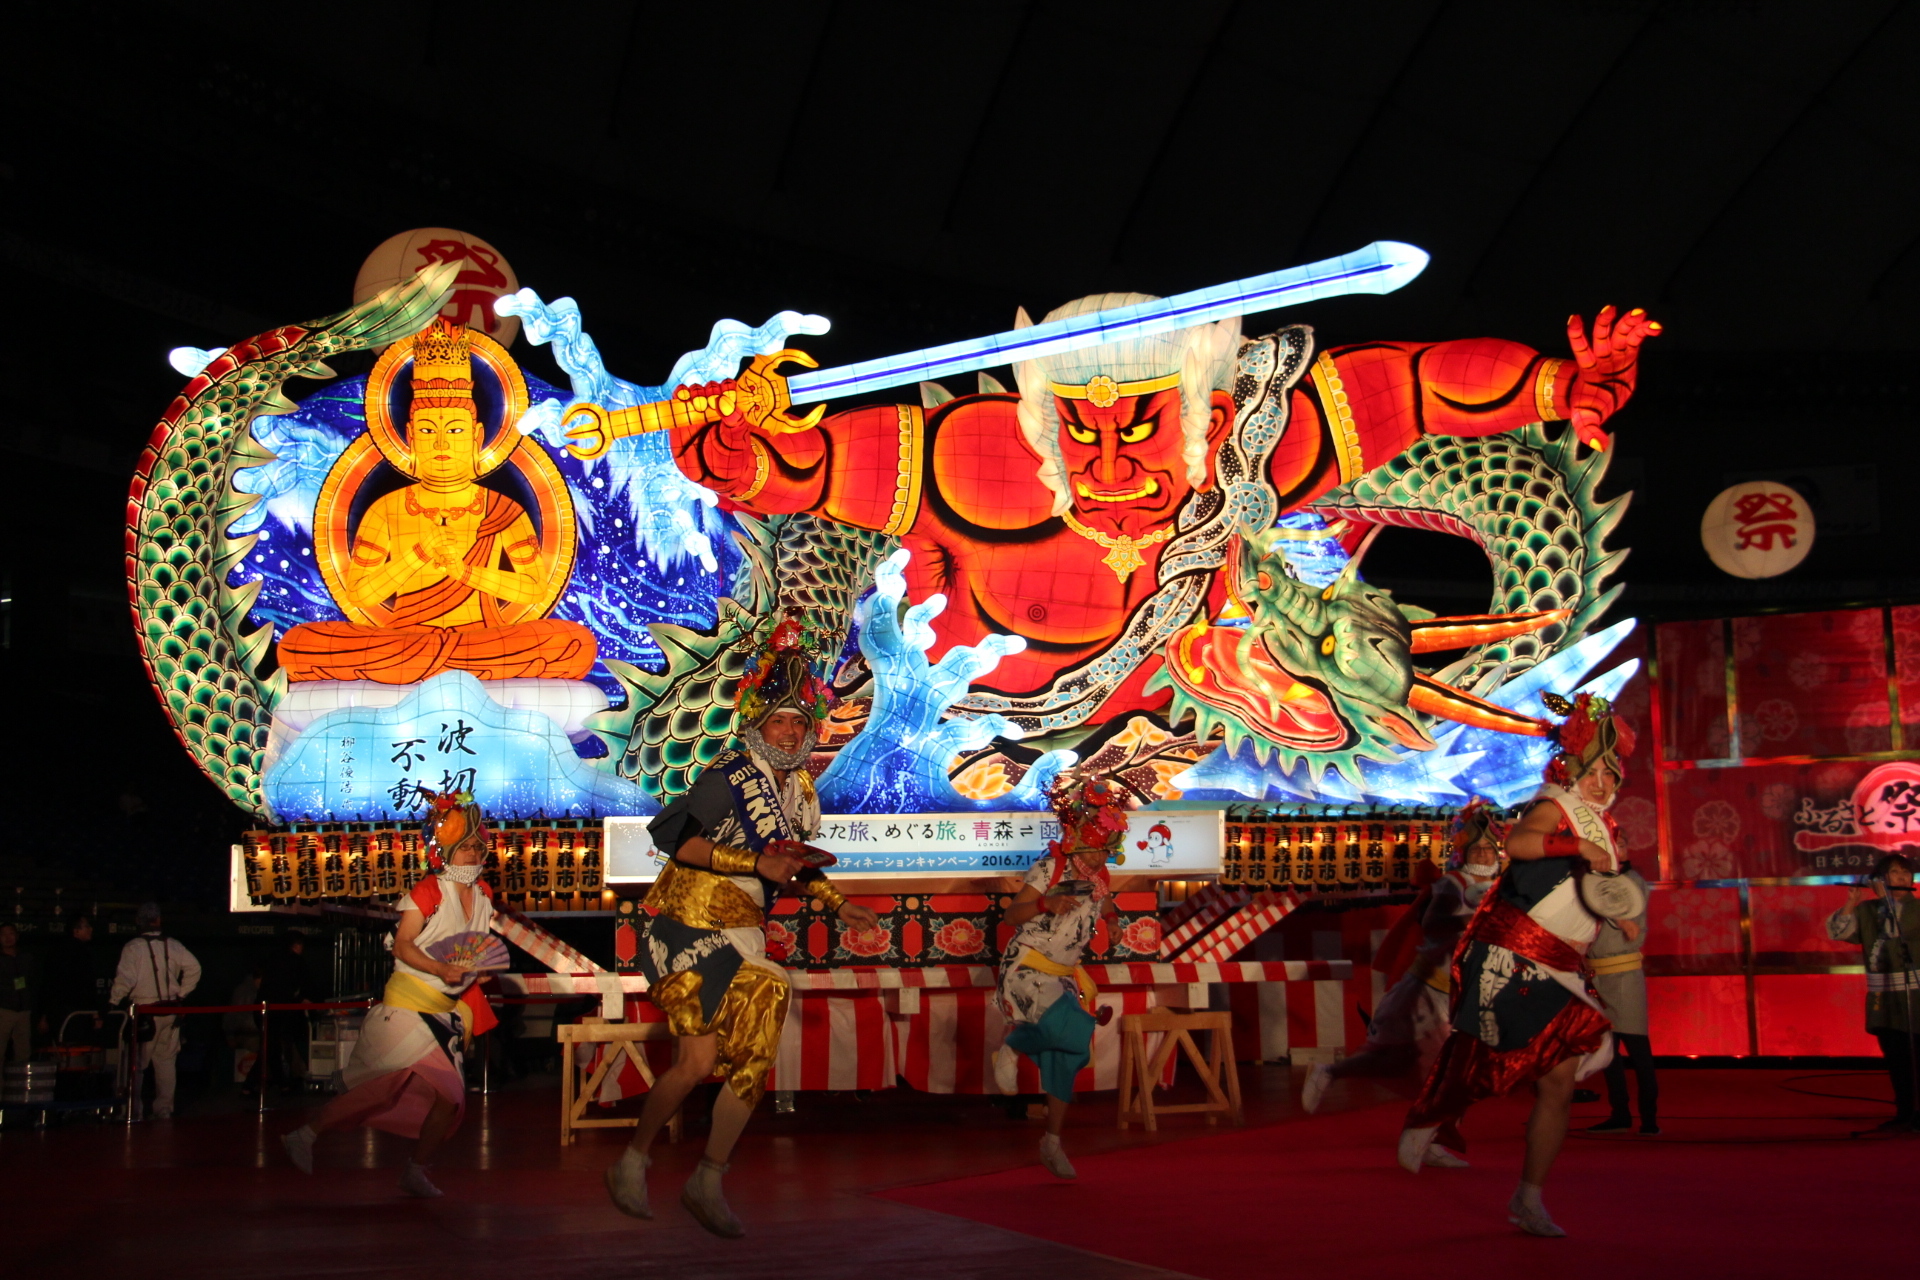 画像 本日より開催 ふるさと祭り東京16 日本のまつり 故郷の味 レポート の画像3 14 Spice エンタメ特化型情報メディア スパイス